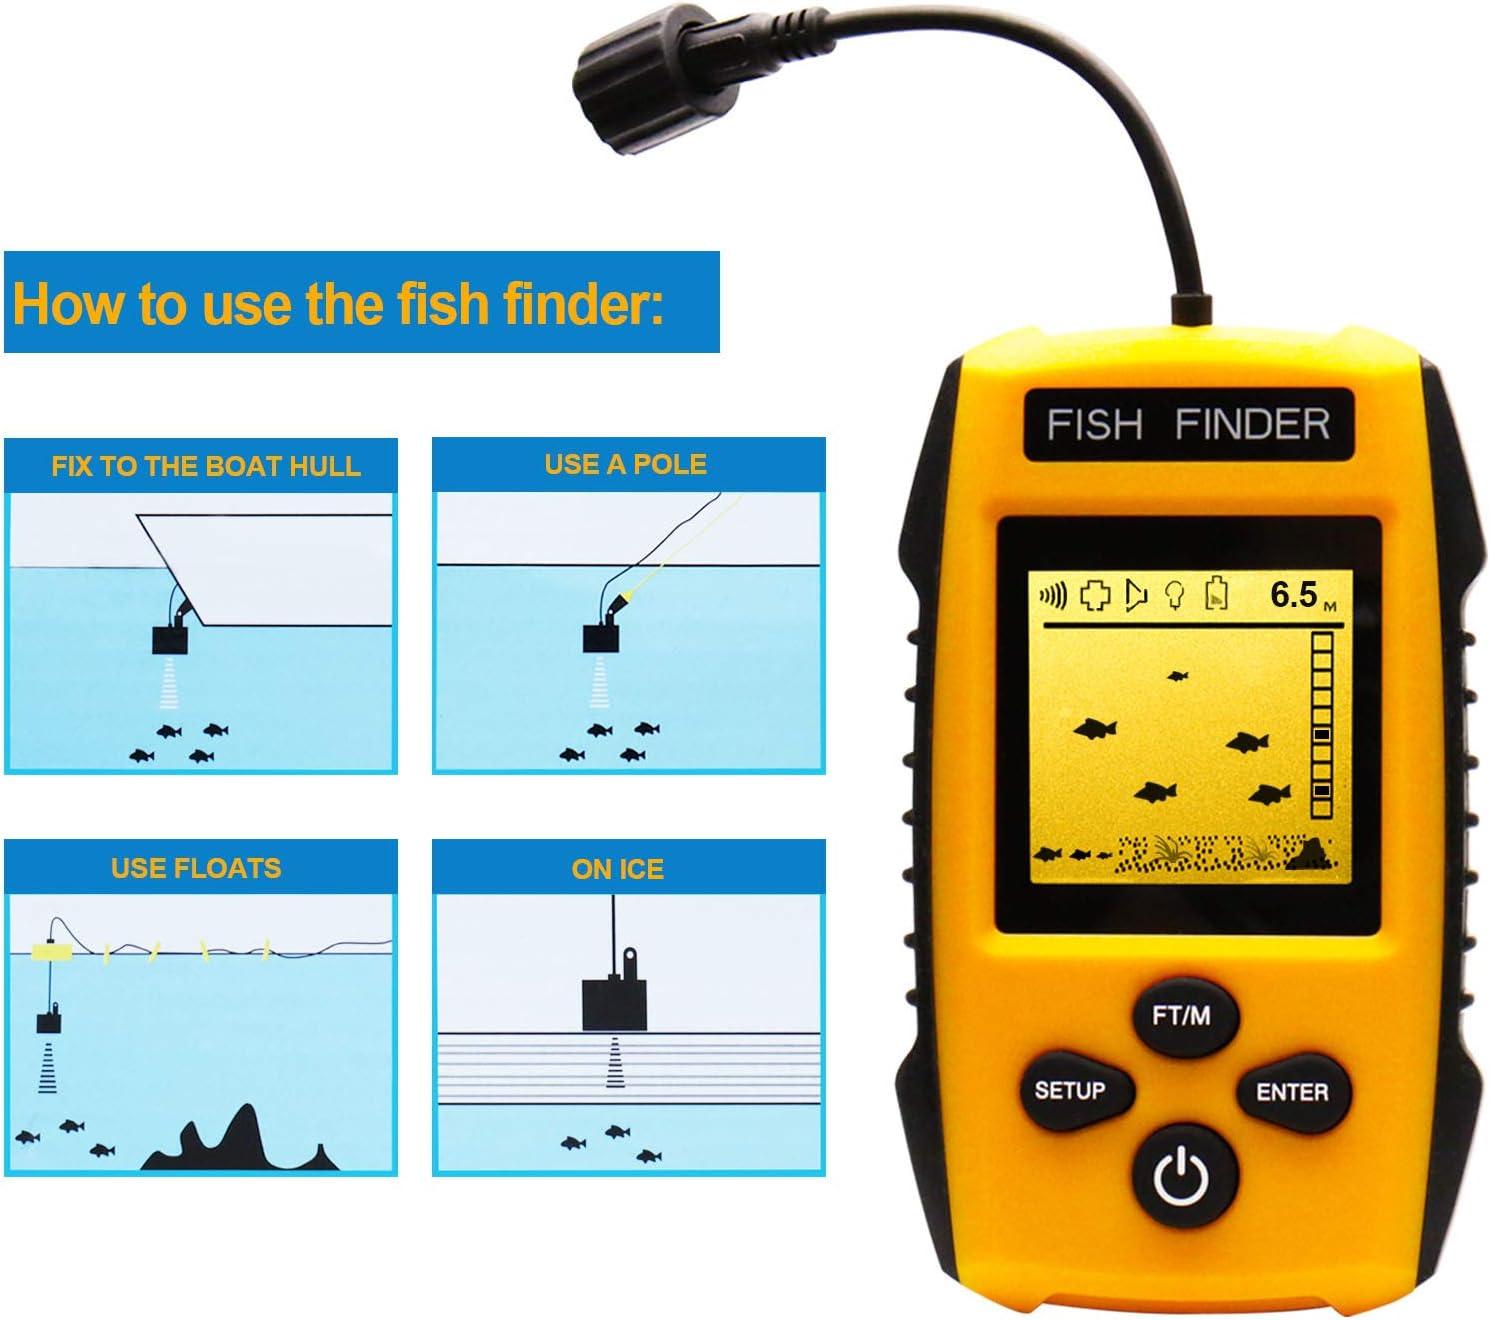 Portable Fish Finder Handheld Fishfinder Depth Sonar Sensor Transducer